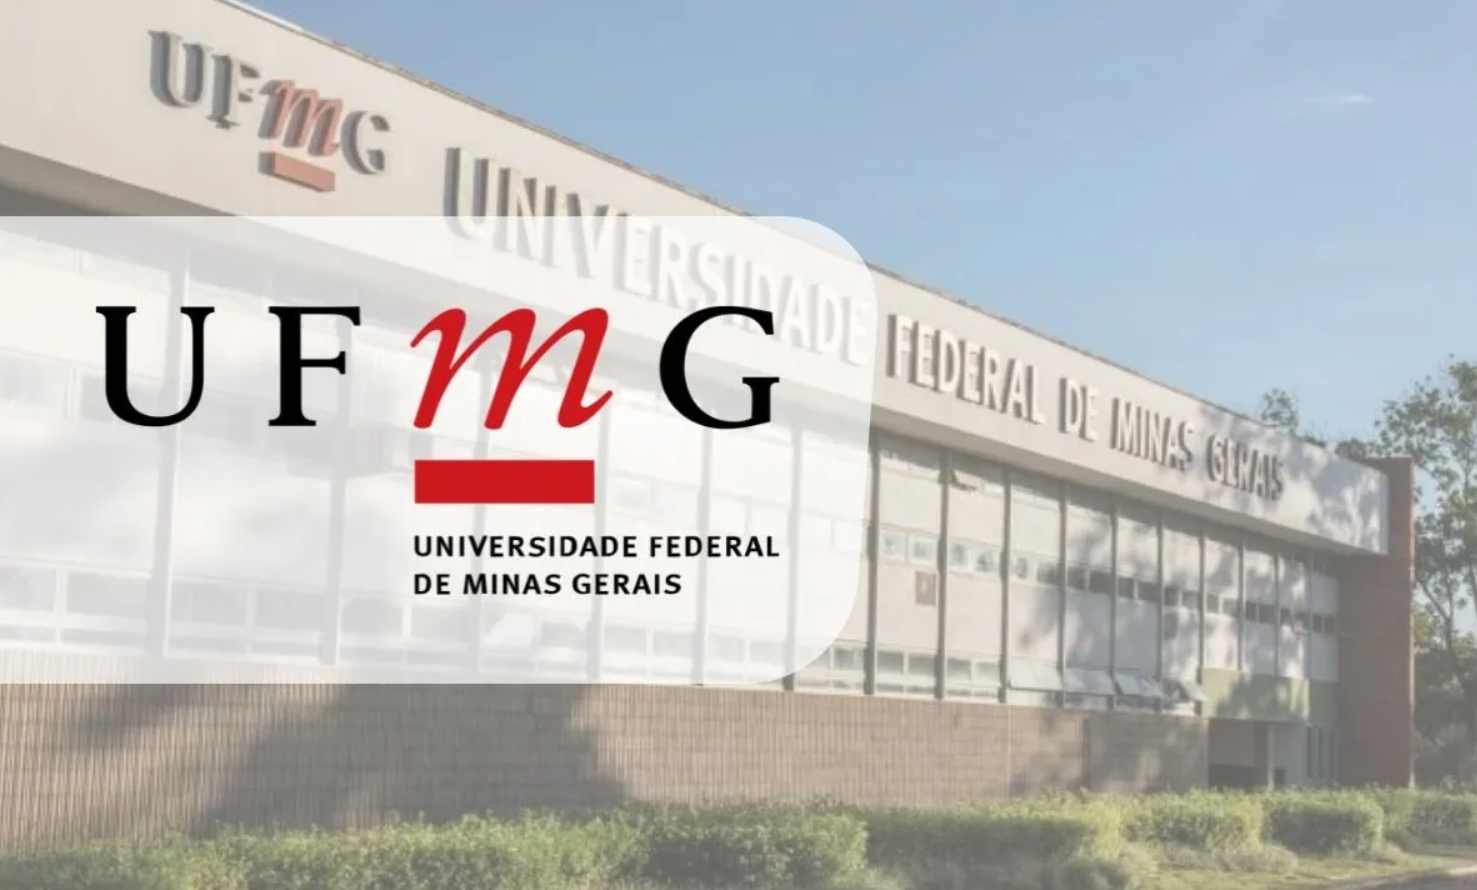 UFMG: NOTAS DE CORTE NO SISU 2022 NA UNIVERSIDADE FEDERAL DE MINAS GERAIS 